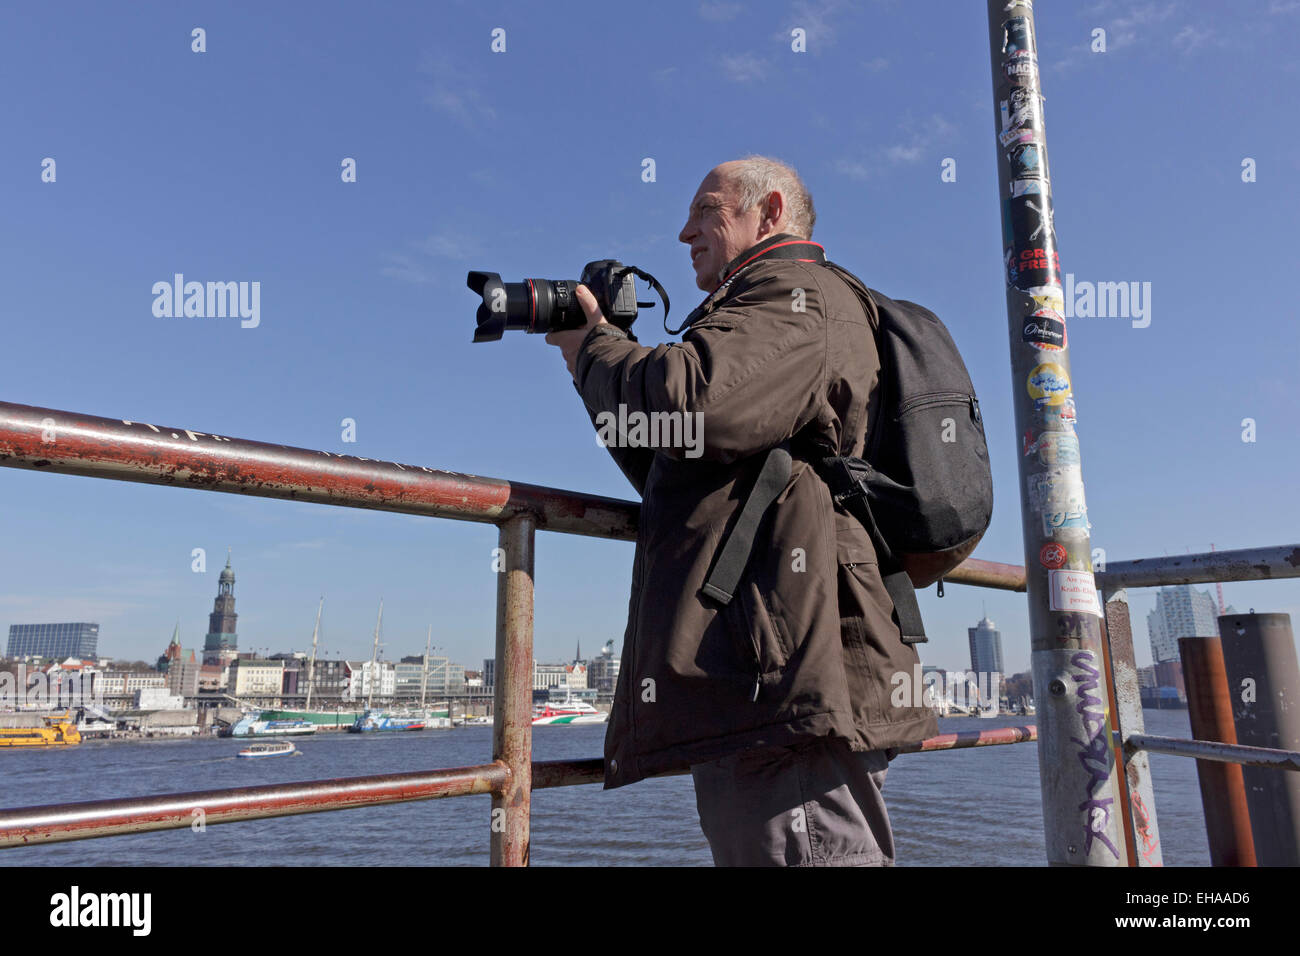 Mann fotografiert im Hafen von Hamburg, Deutschland Stockfoto